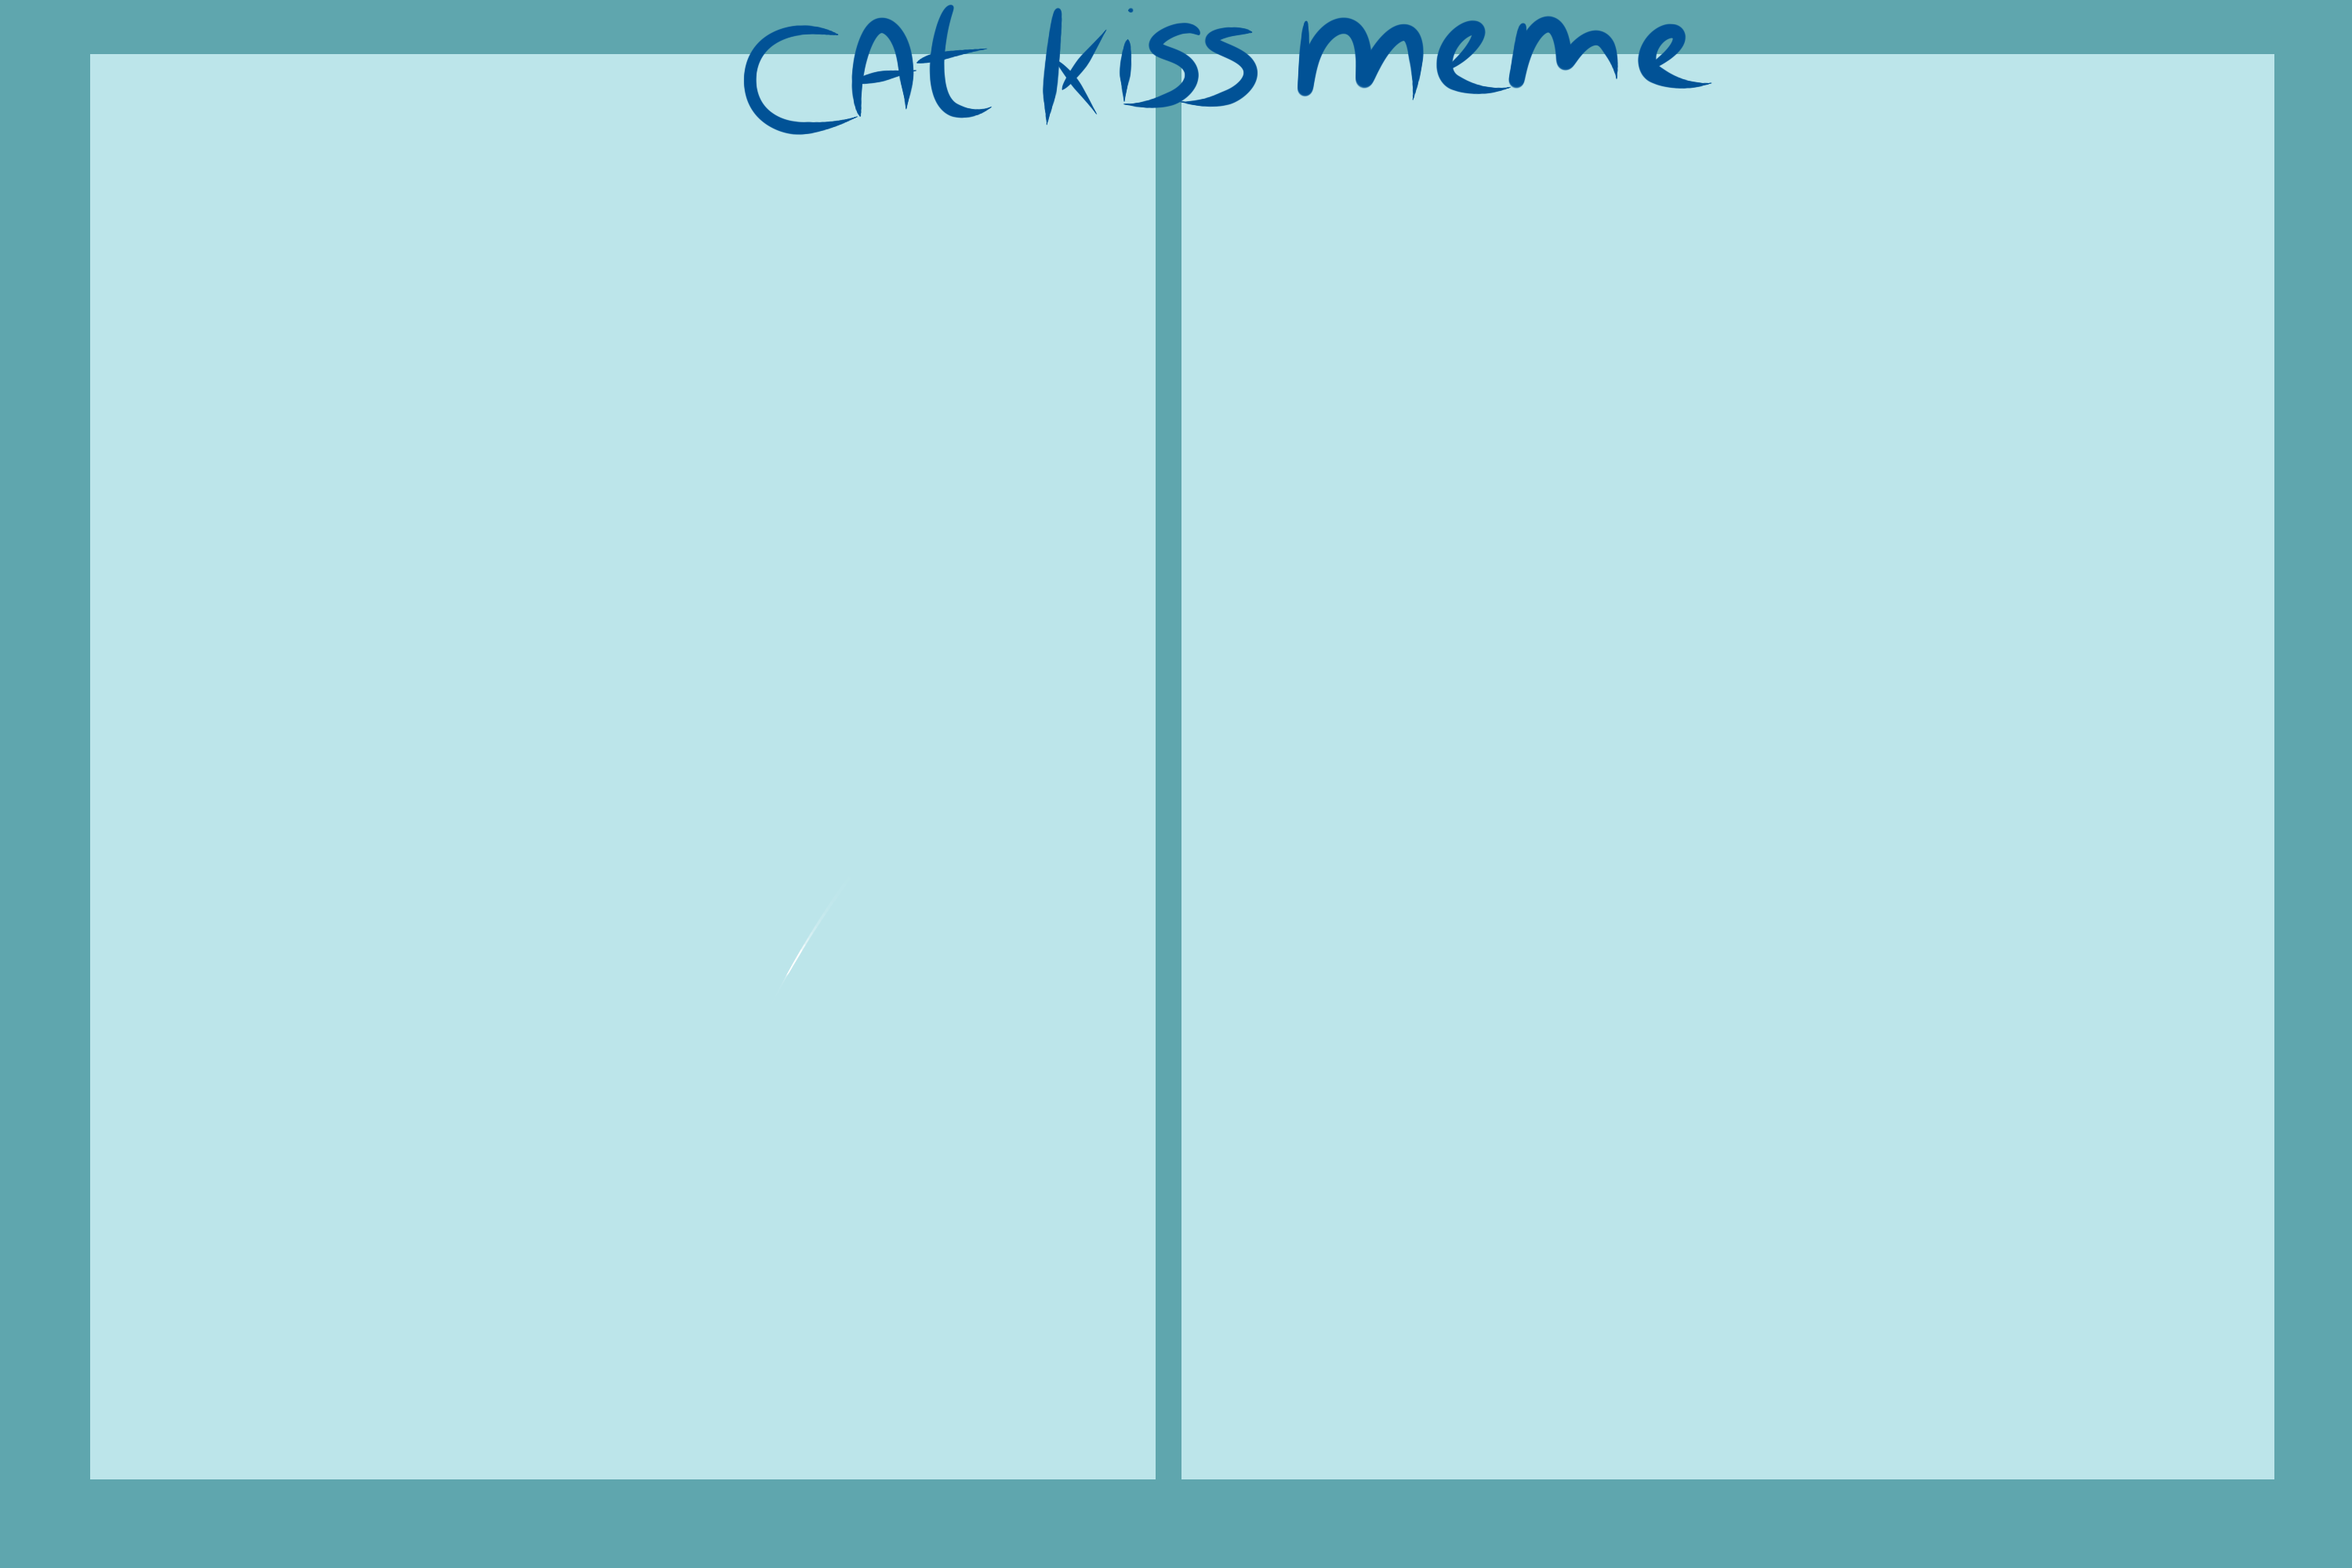 [Meme] Cat Kisses YvvJStkk_o